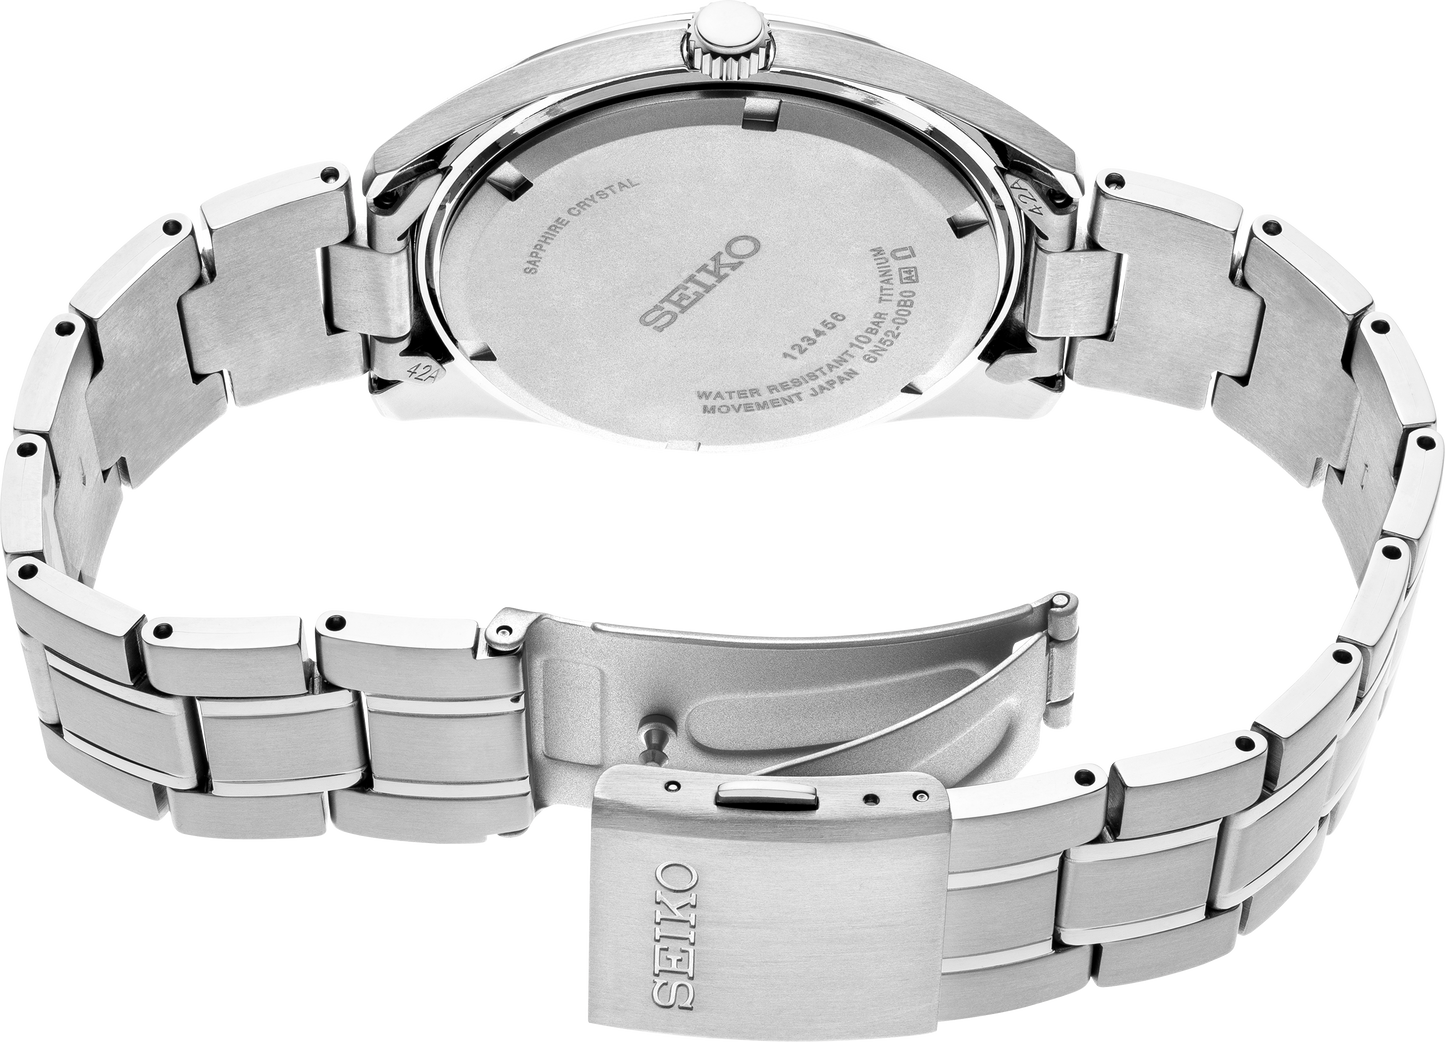 SEIKO Classic Quartz Silver Dial Men's Watch SUR369